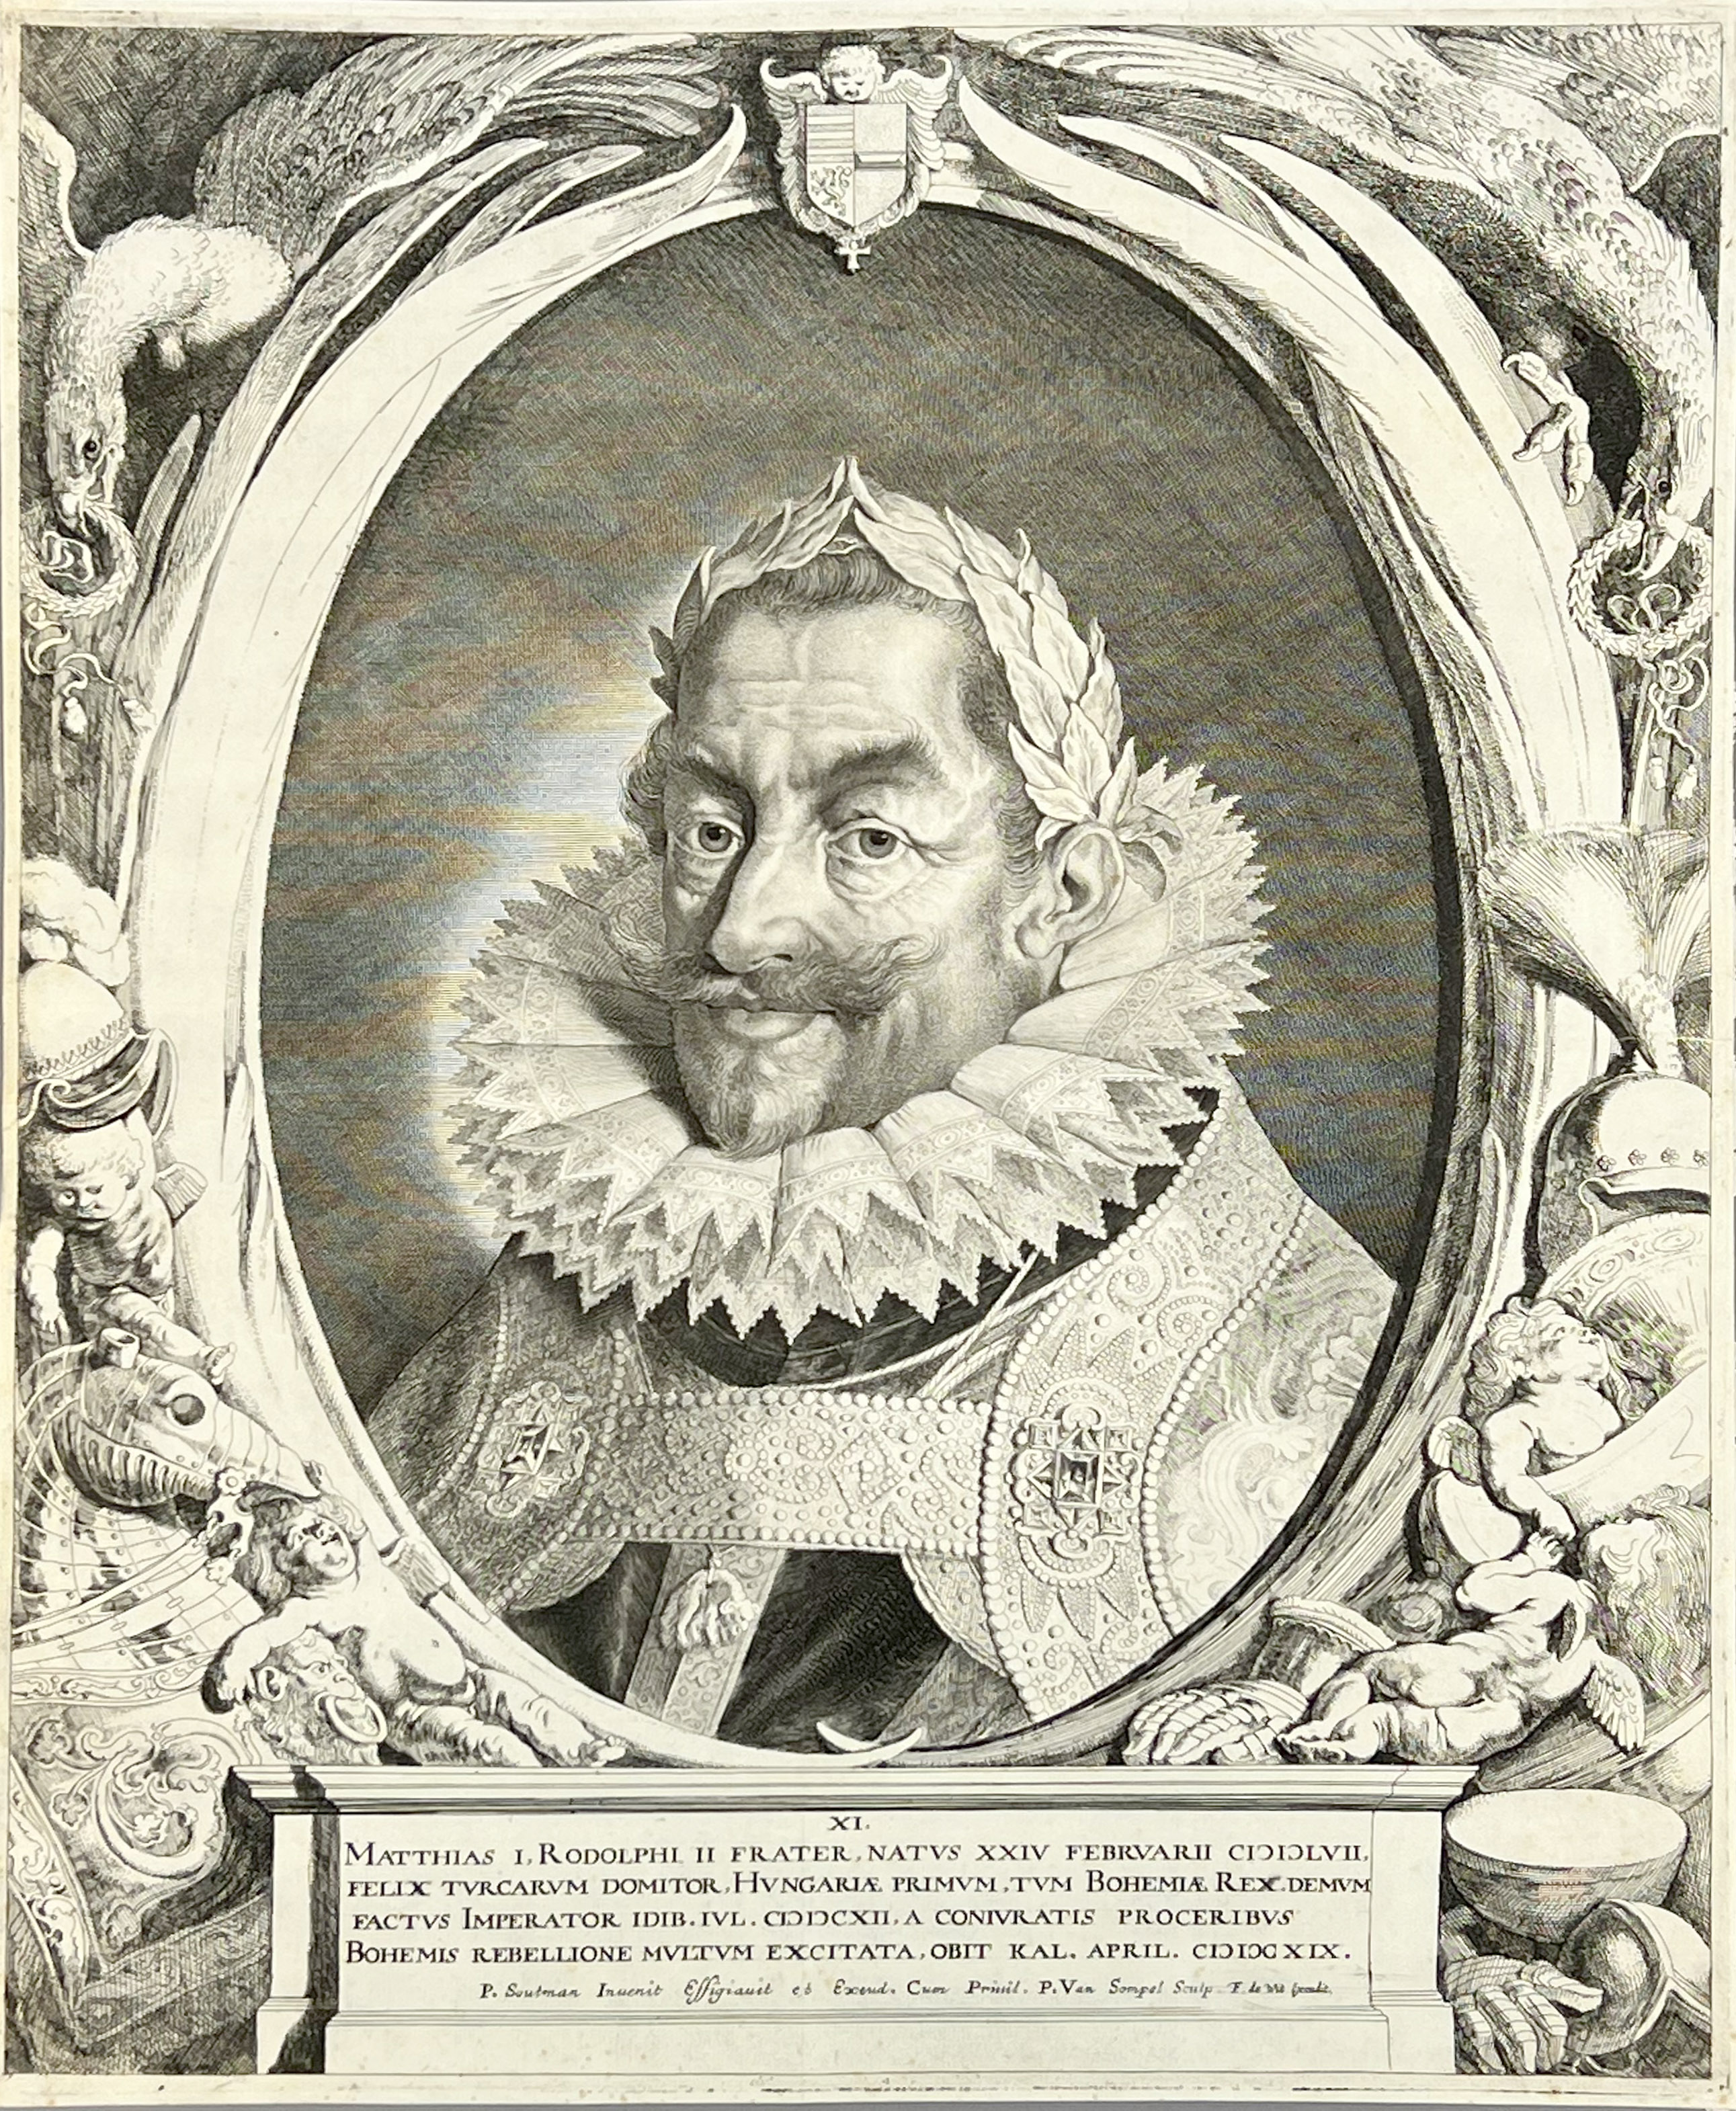 Pieter VAN SOMPEL (c.1600 - c.1650). Matthias I, Emperor of Austria